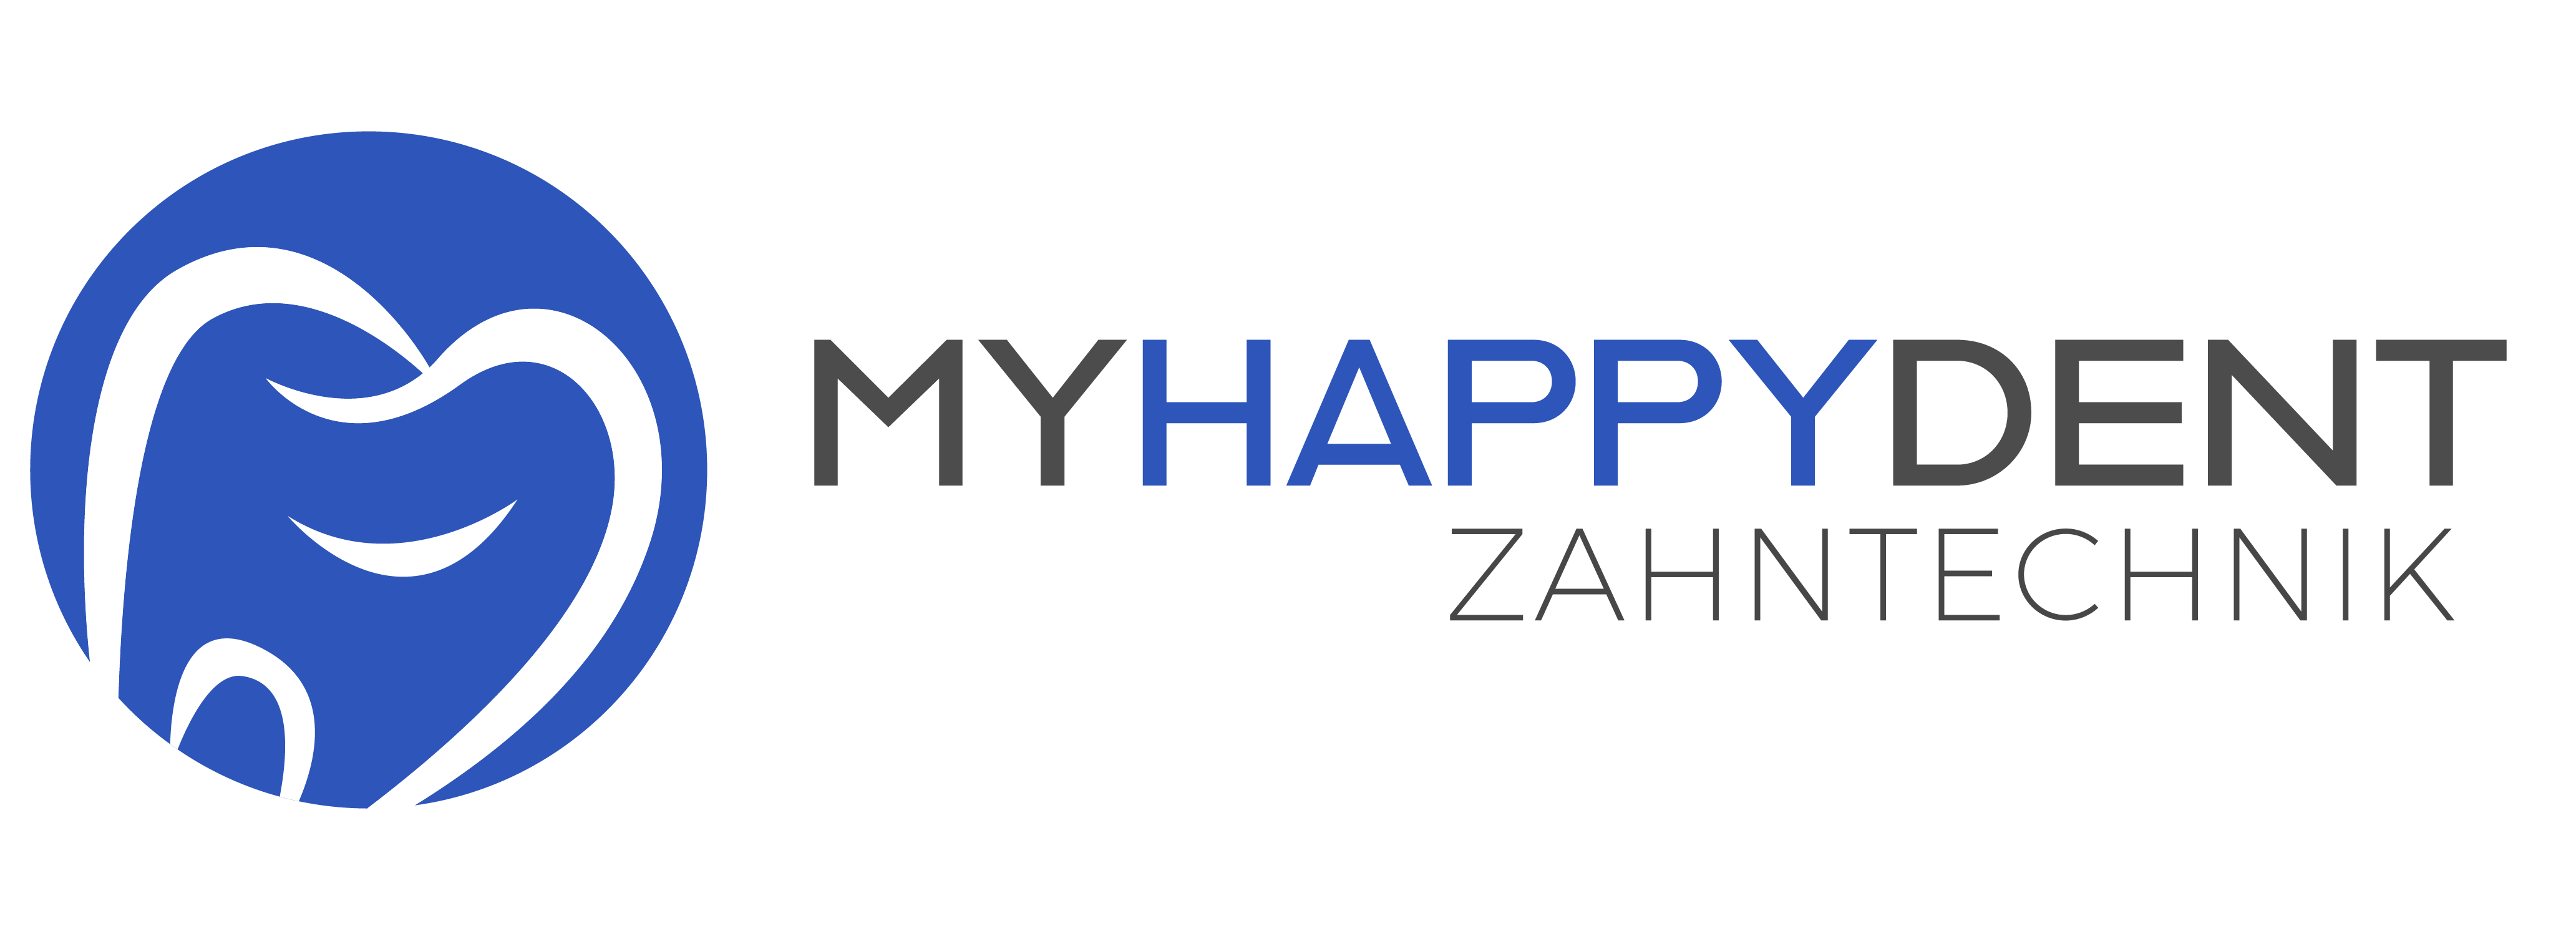 MyHappyDent – Zahntechnik